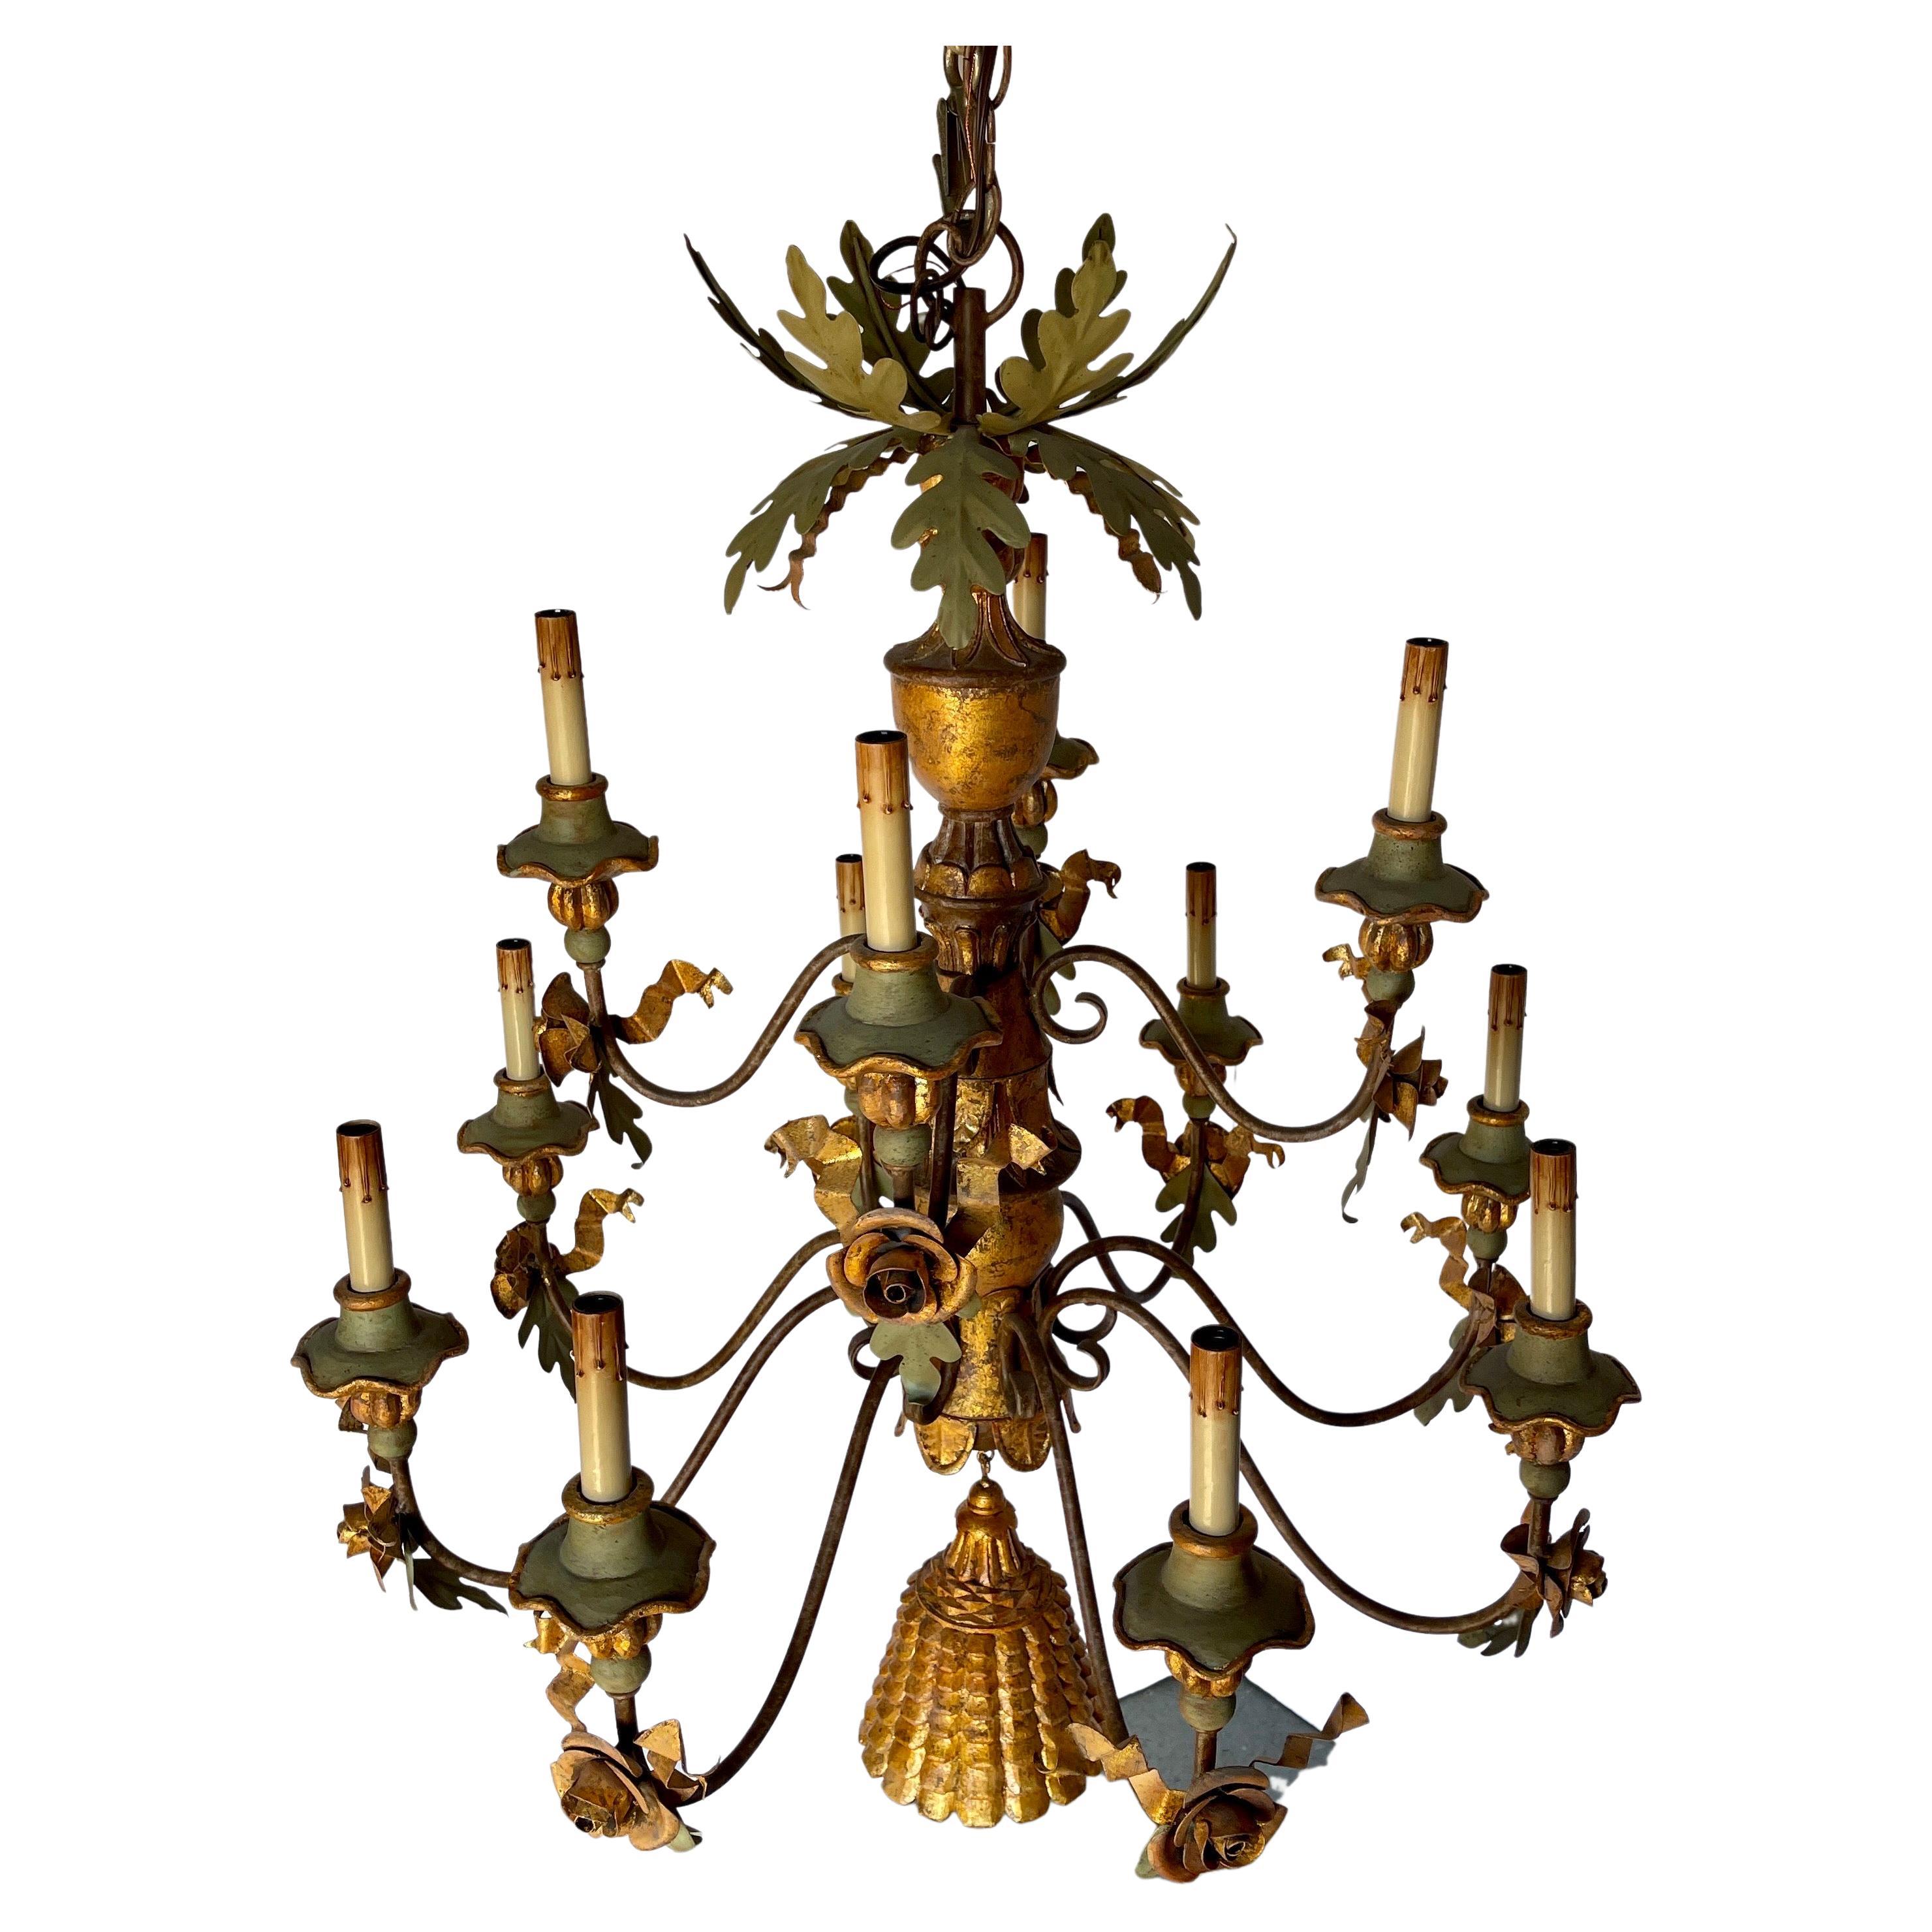 Lustre en fer vert et bois doré avec détails de fleurs et grande pampille dorée

Exceptionnel lustre de 12 lampes à décor de feuillage doré, de tole, de feuilles de chêne vertes et de fleurs en métal. Une grande houppe sculptée vient compléter le